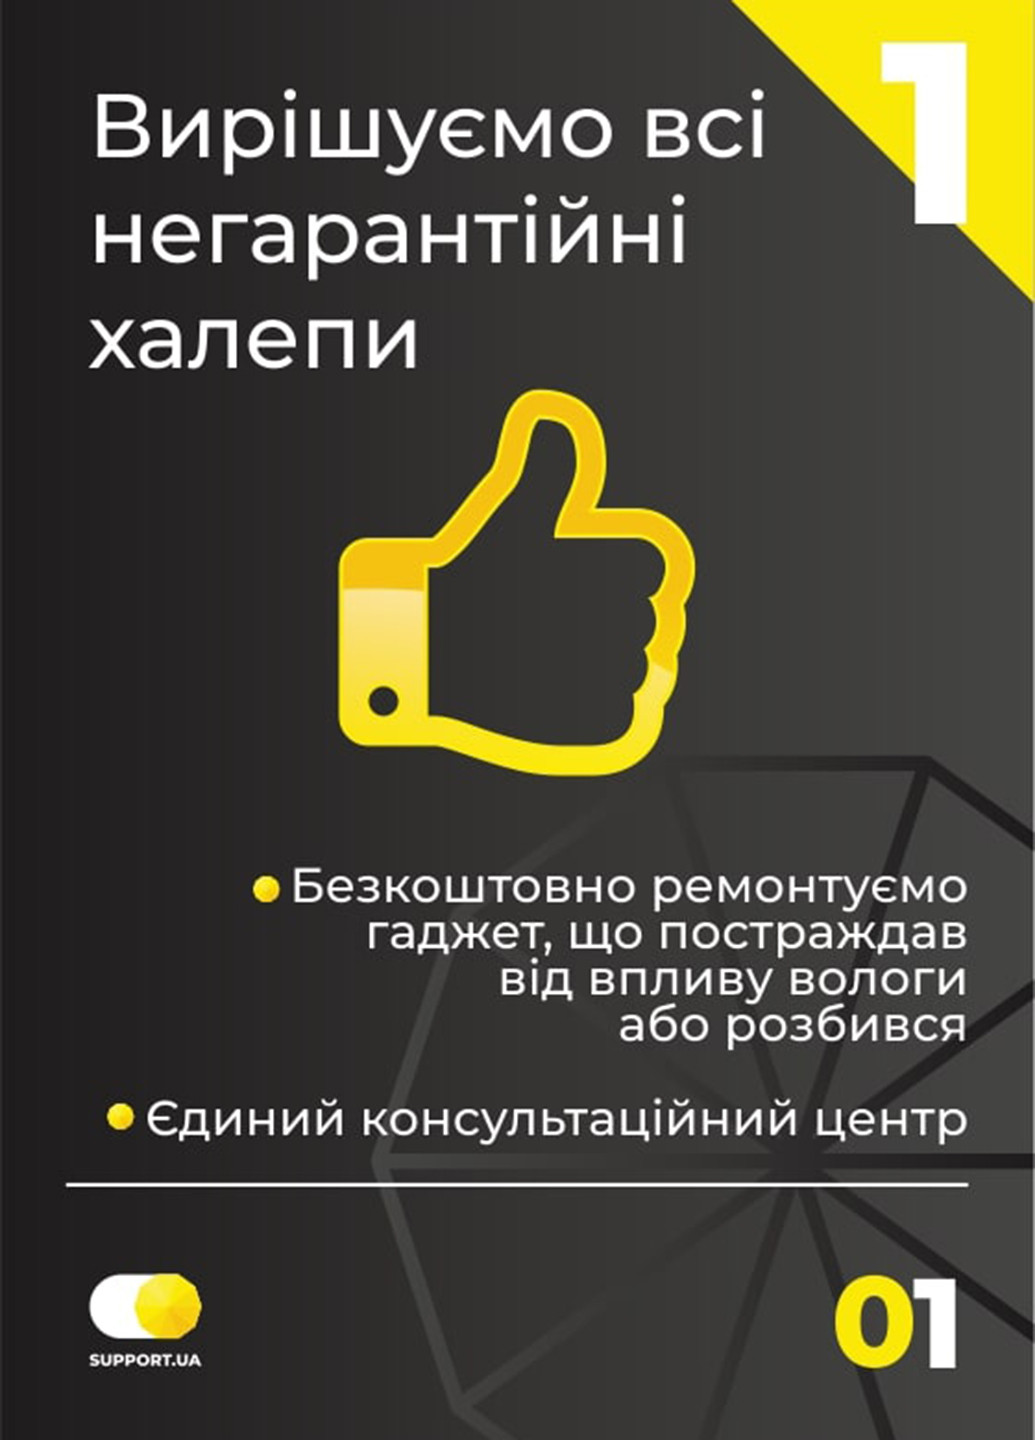 Сервис "Ooops! разбил, залил"(10001-15000), Электронный сертификат от Support.ua